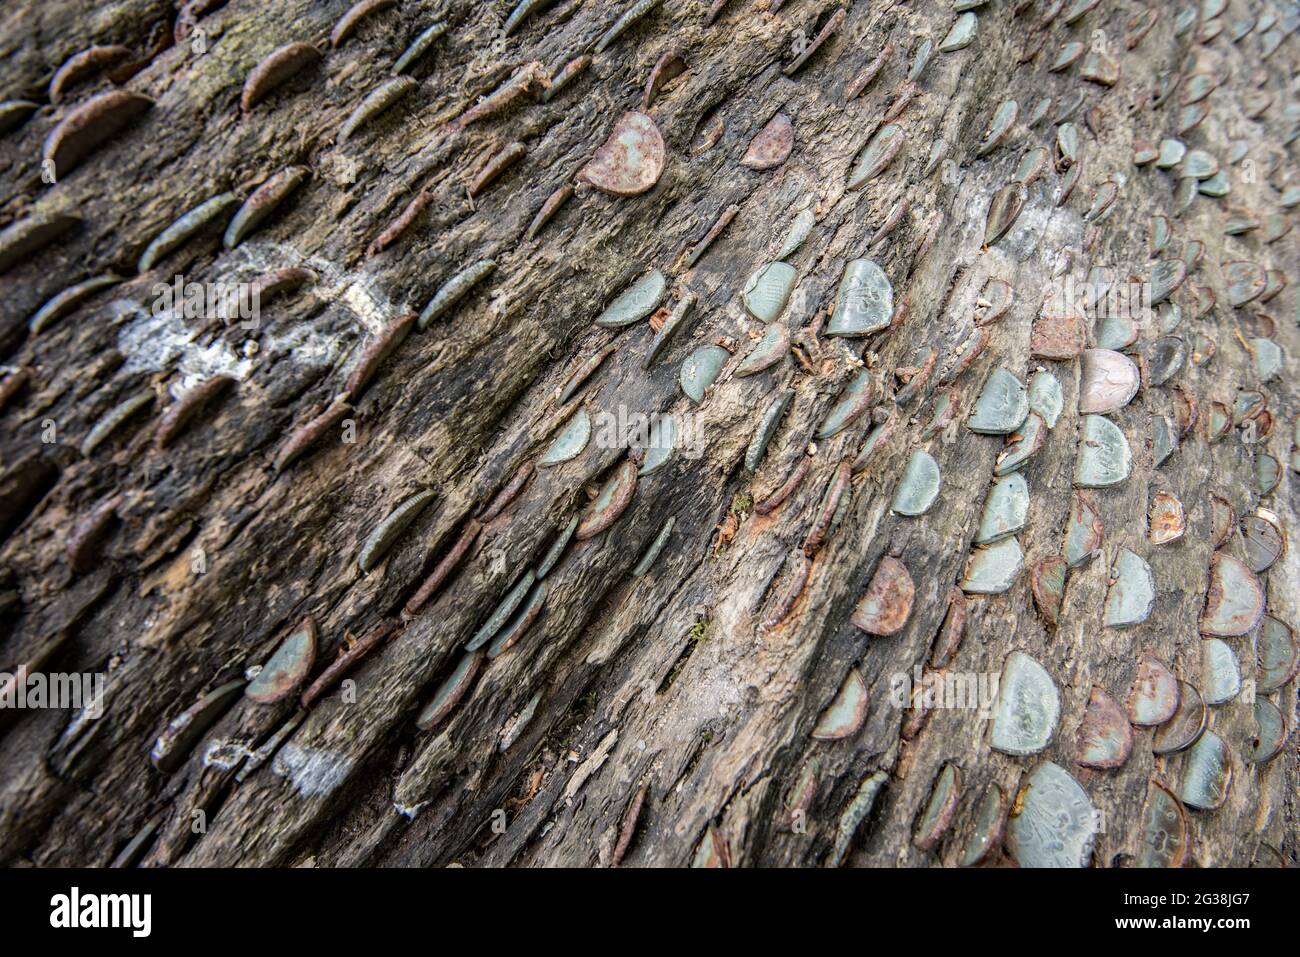 A money tree at Bolton Abbey Stock Photo